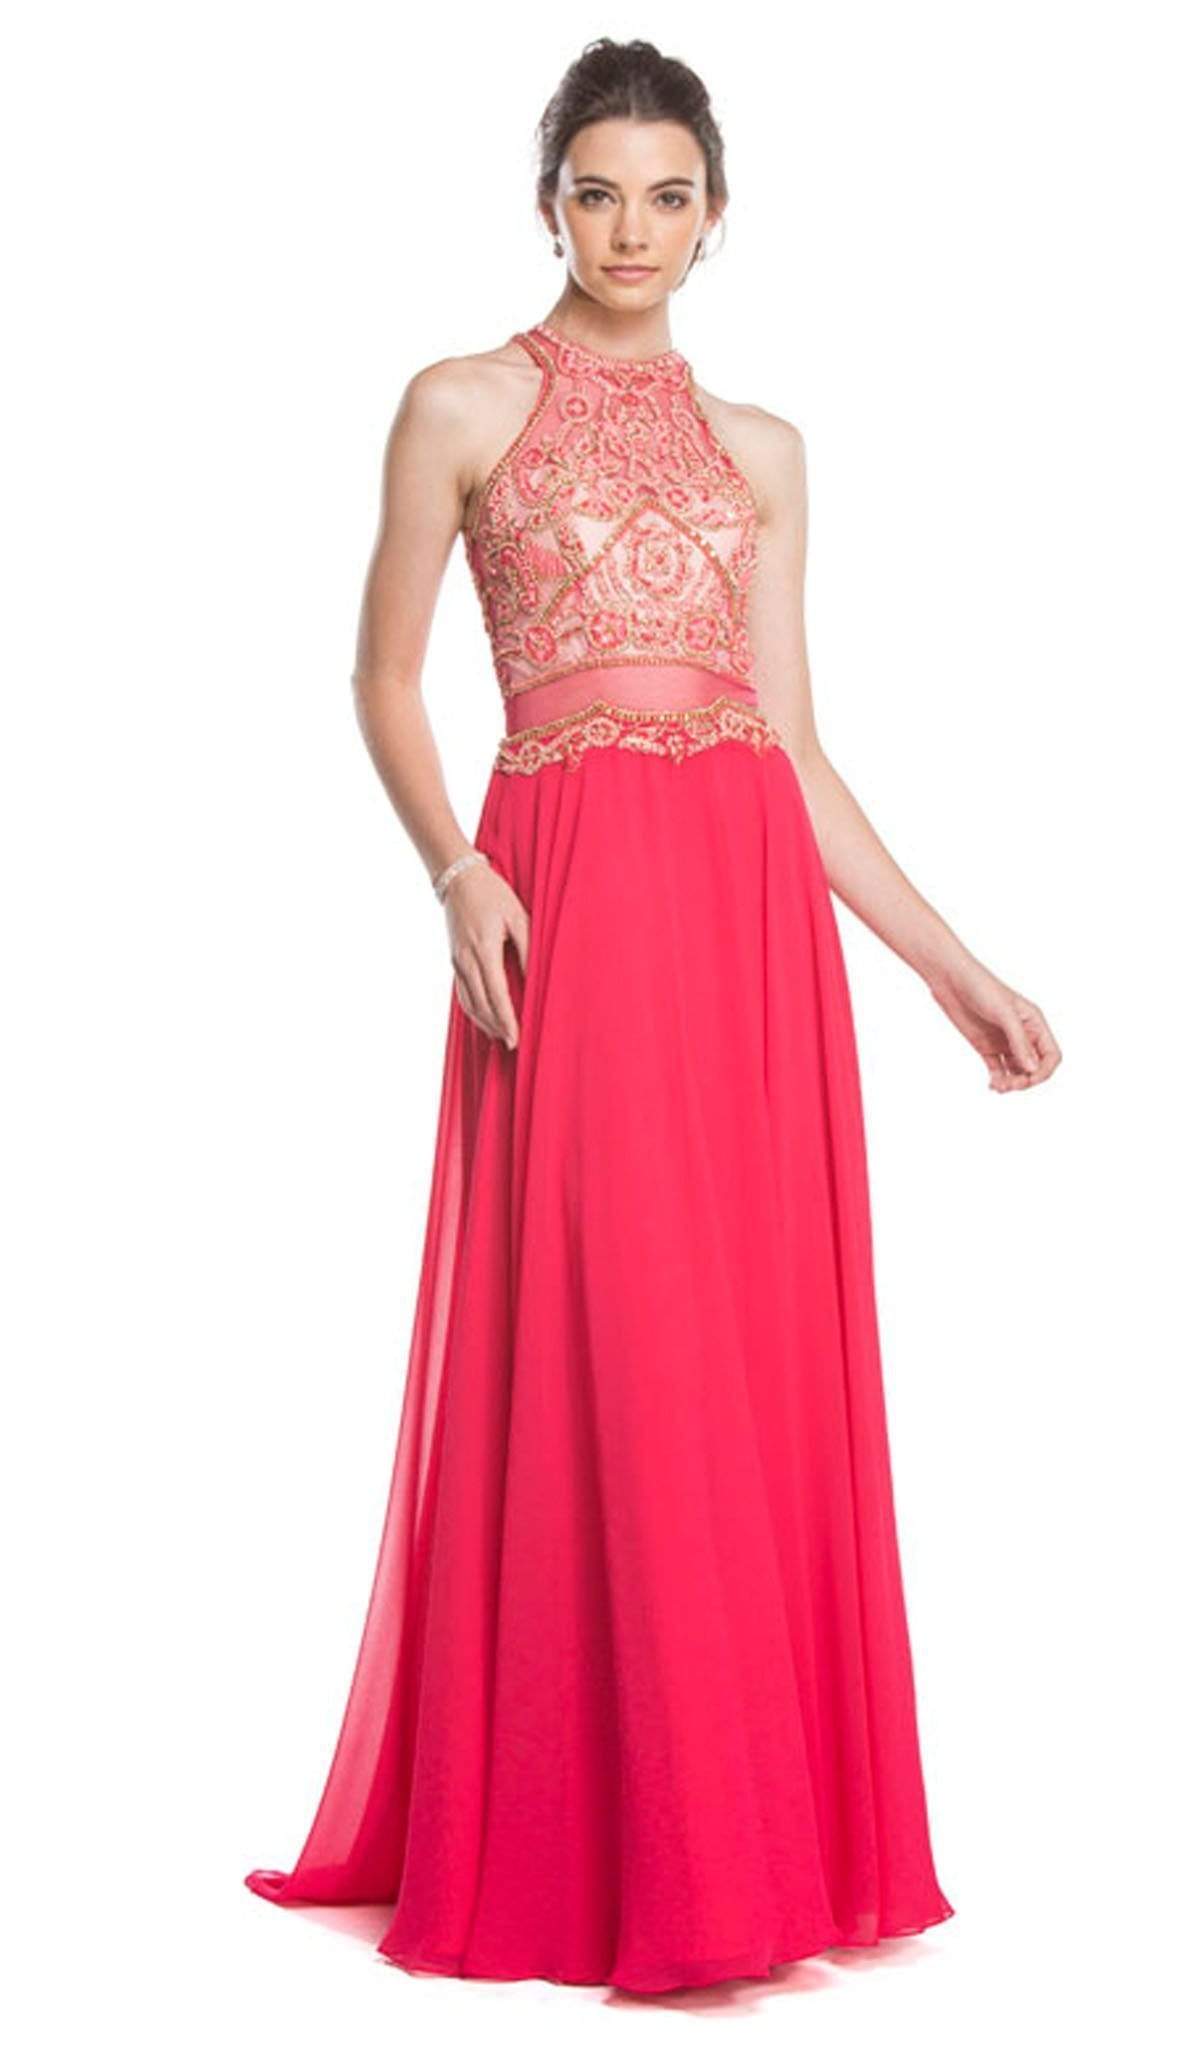 Aspeed Design - Embellished Illusion Halter A-line Prom Dress
